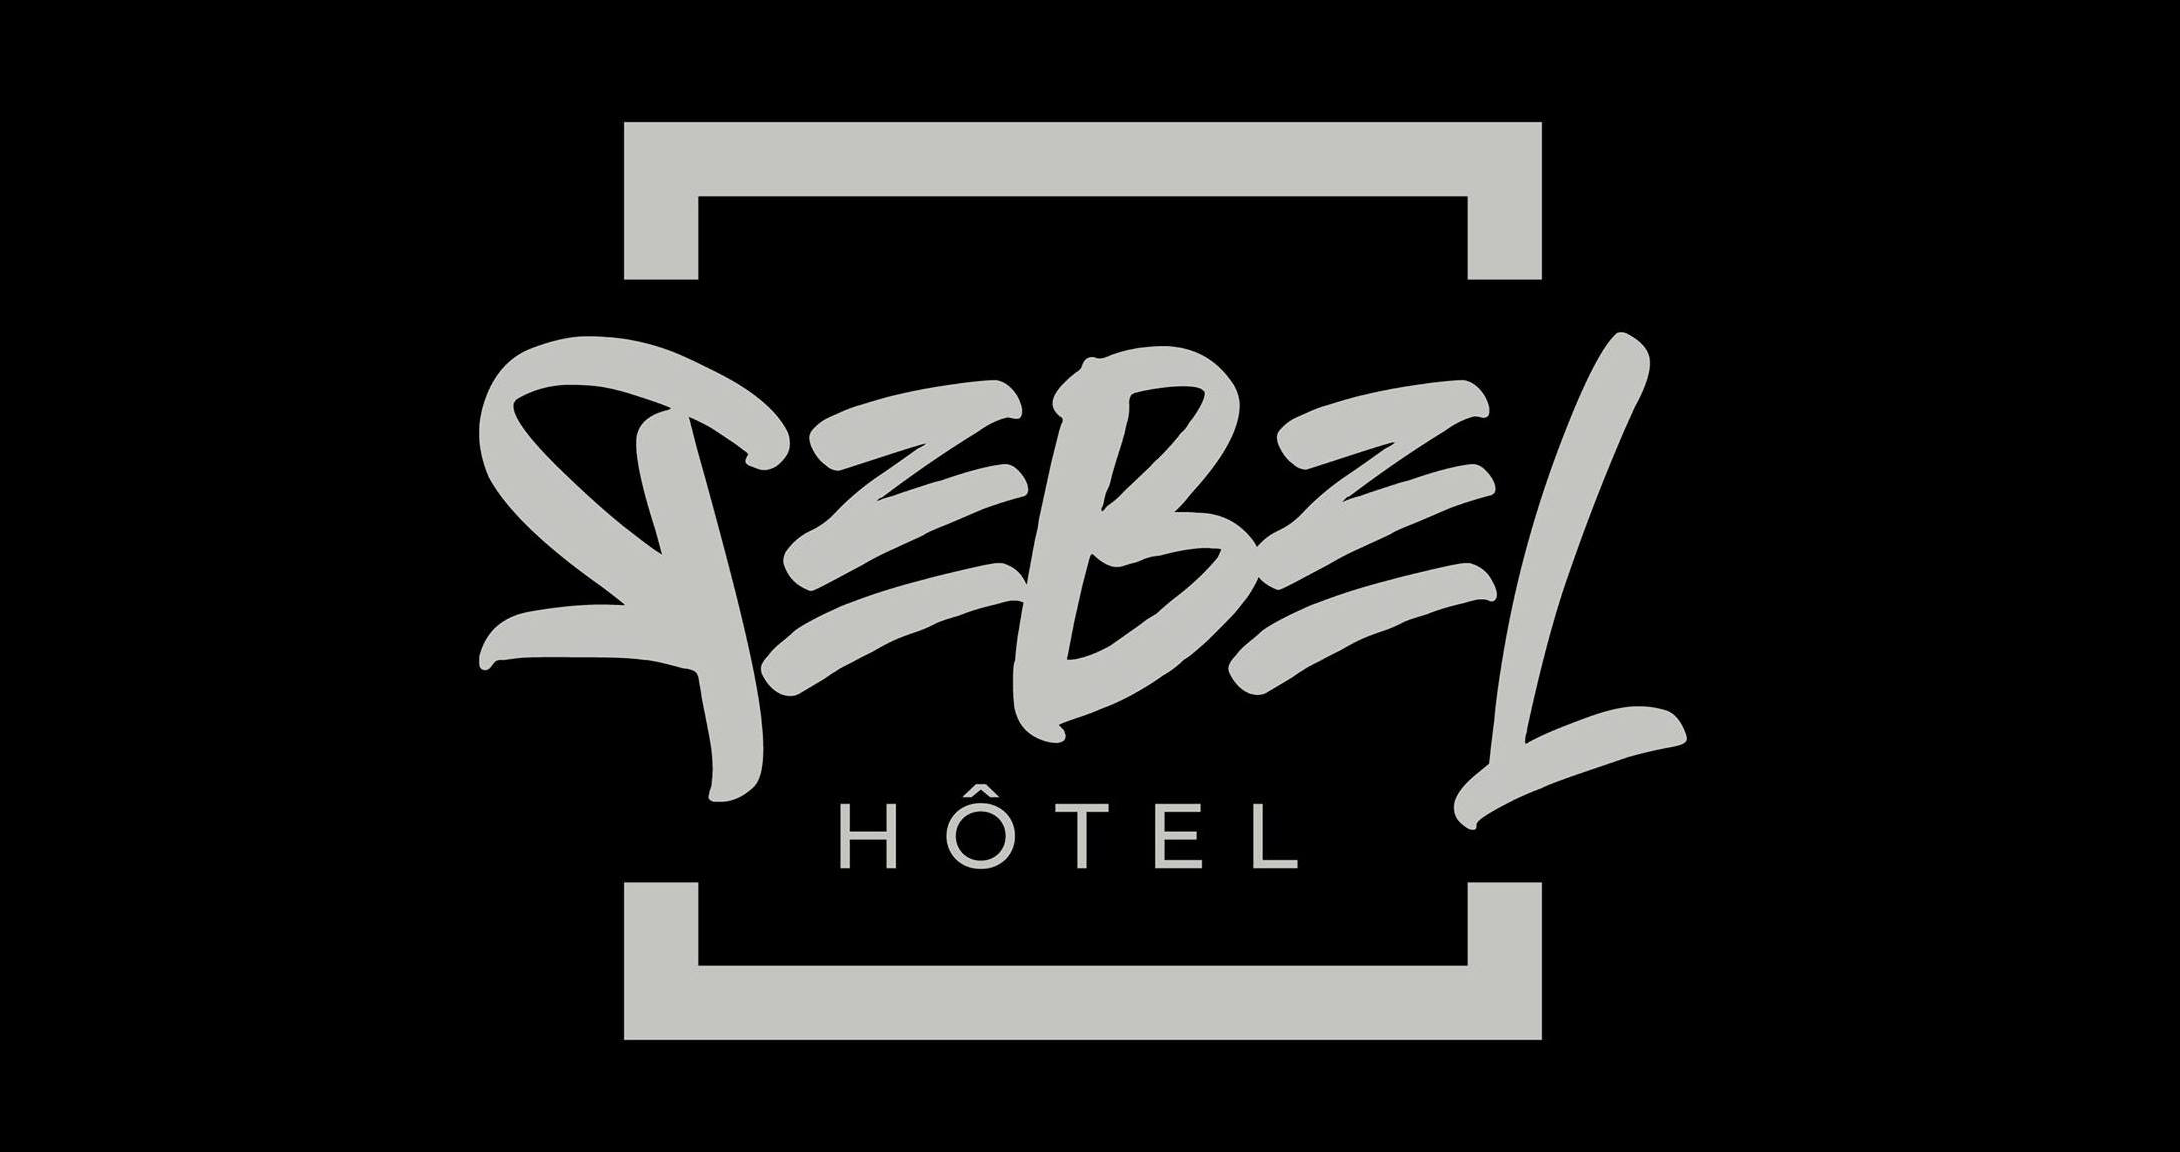 Rebel Hôtel